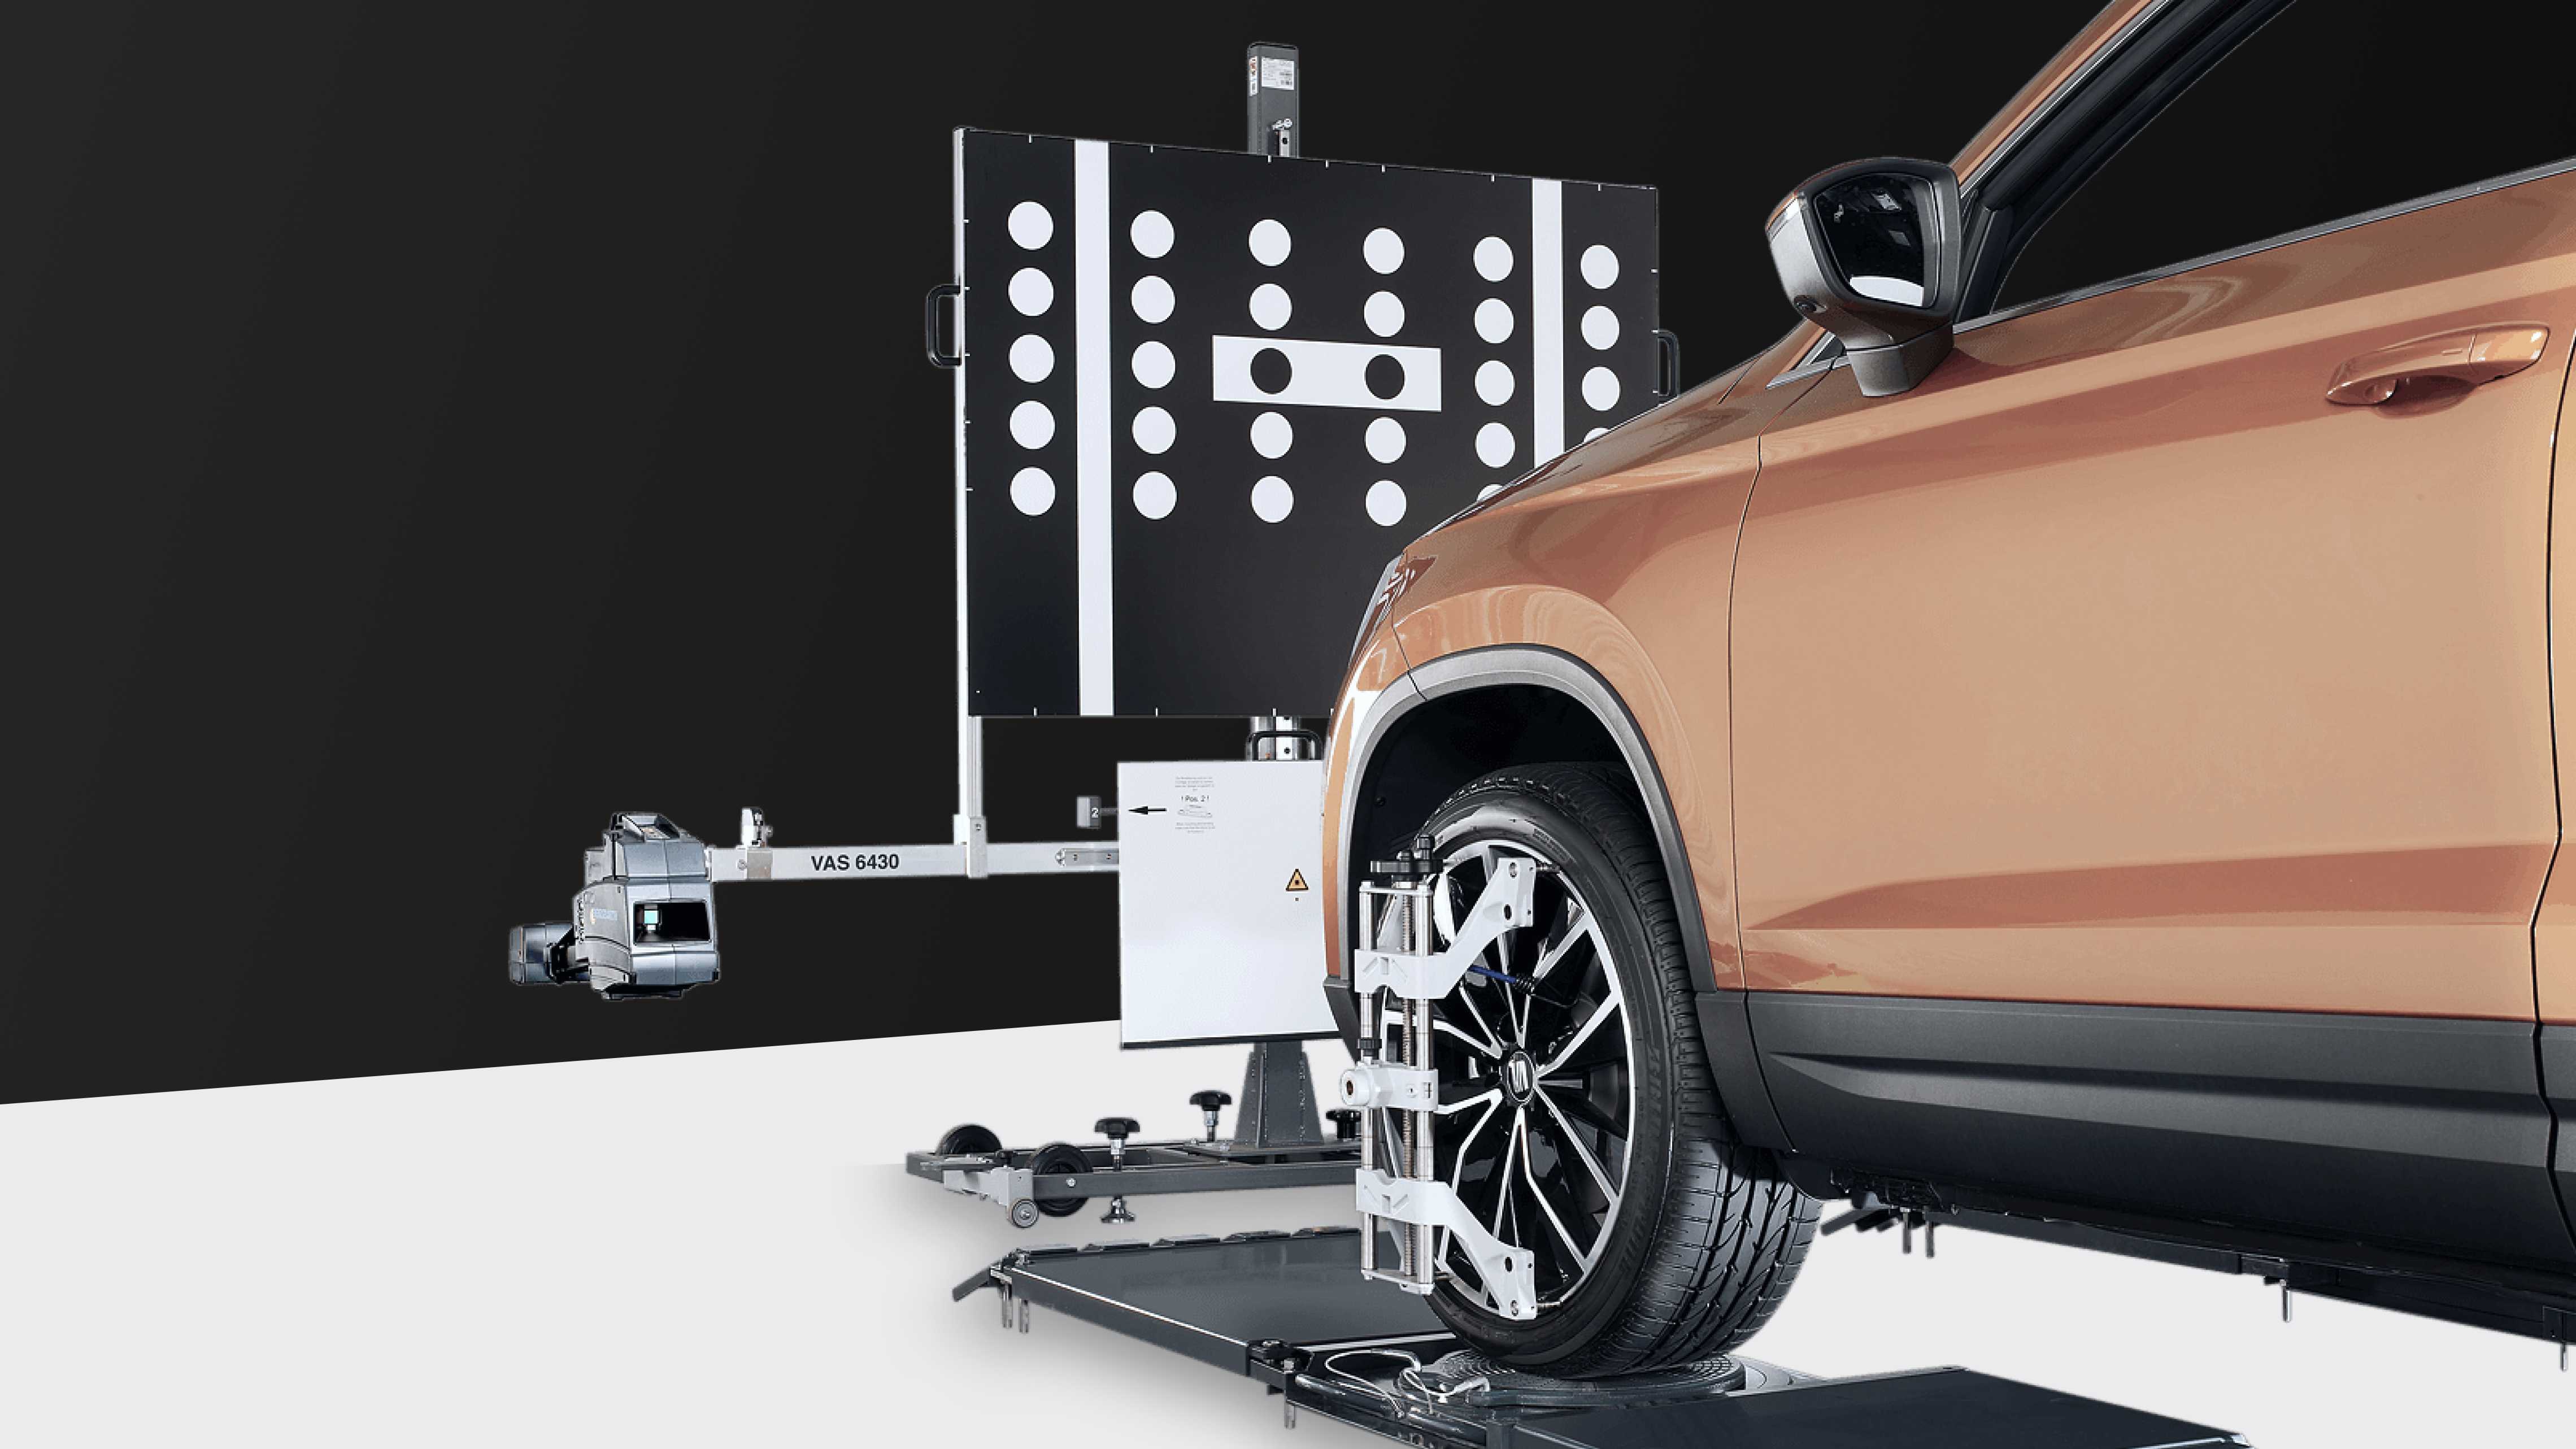 Copertina del caso di studio con auto montata sull'attrezzatura di calibrazione delle ruote con interfaccia utente che mostra il risultato della misurazione.